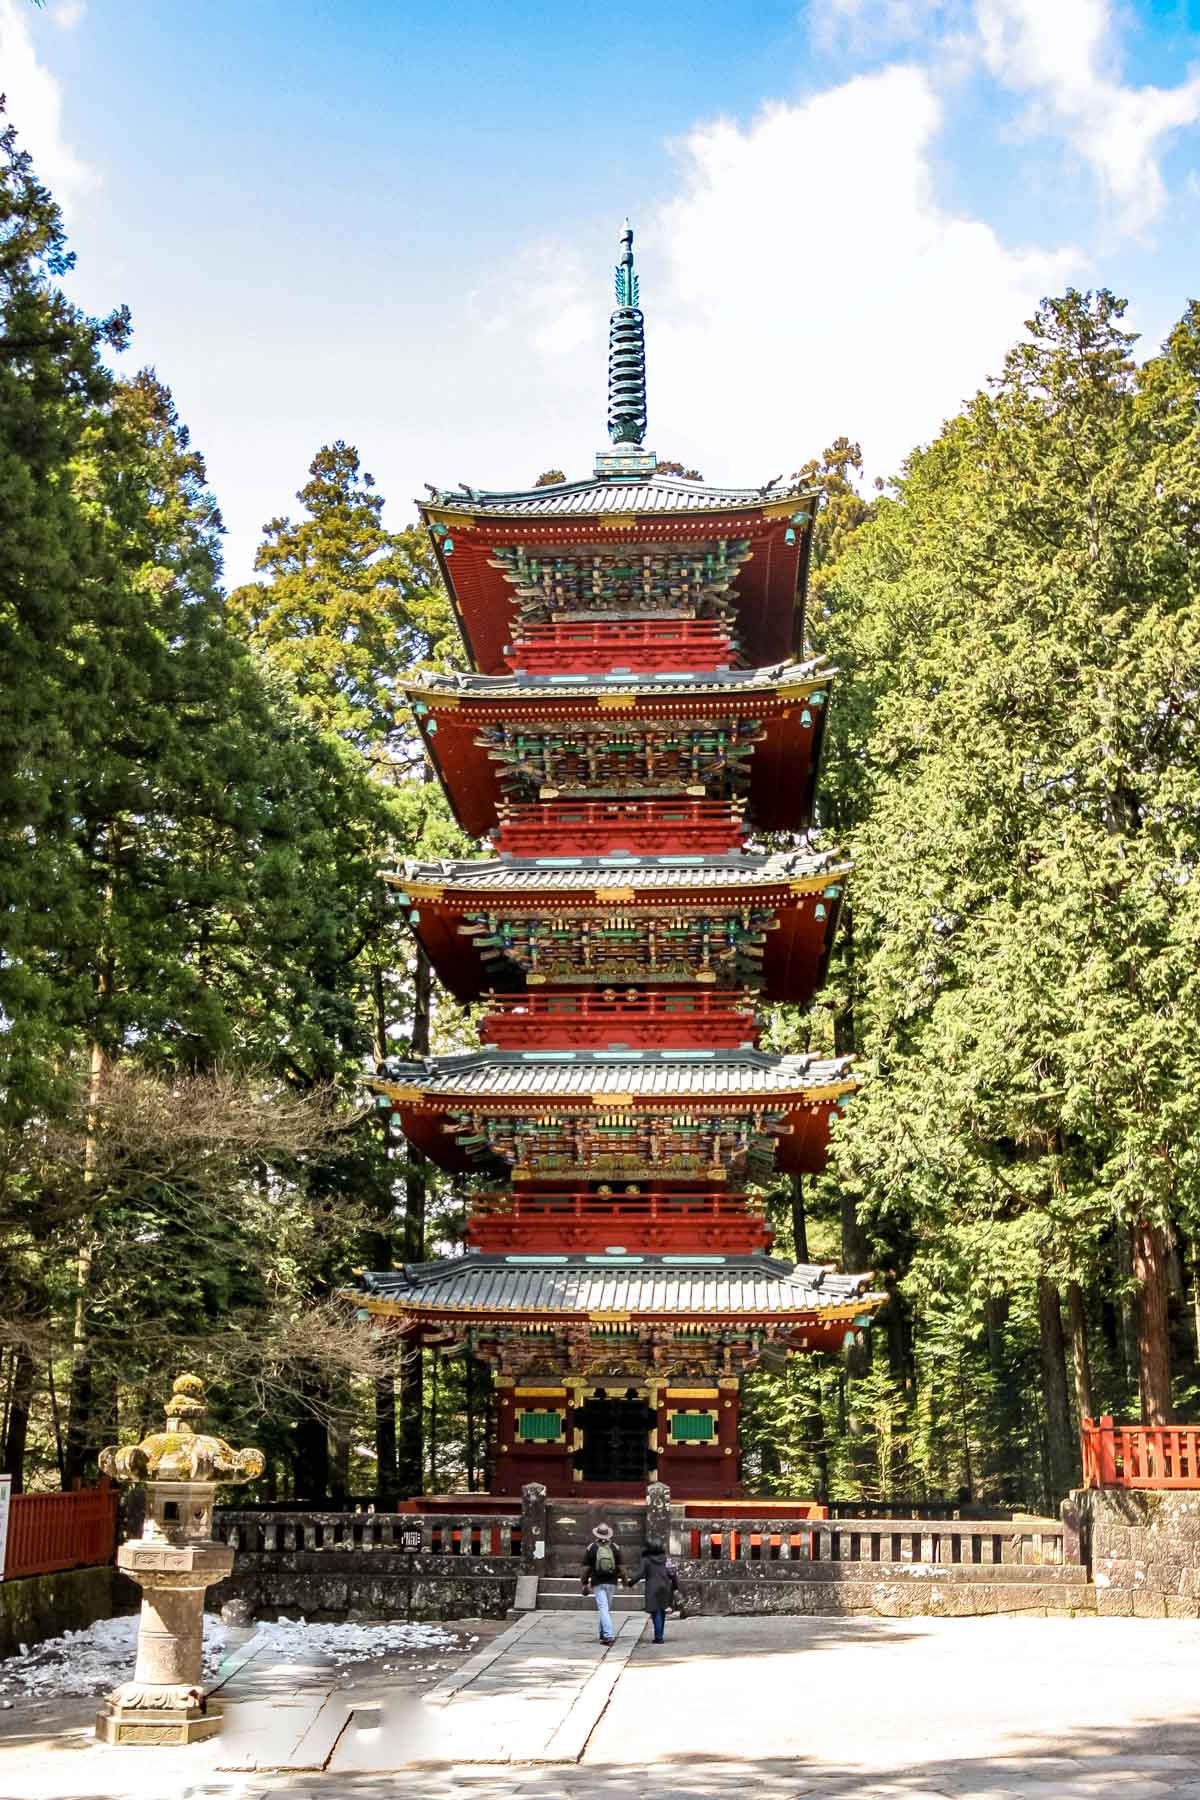 An unforgettable Nikko Day Trip from Tokyo